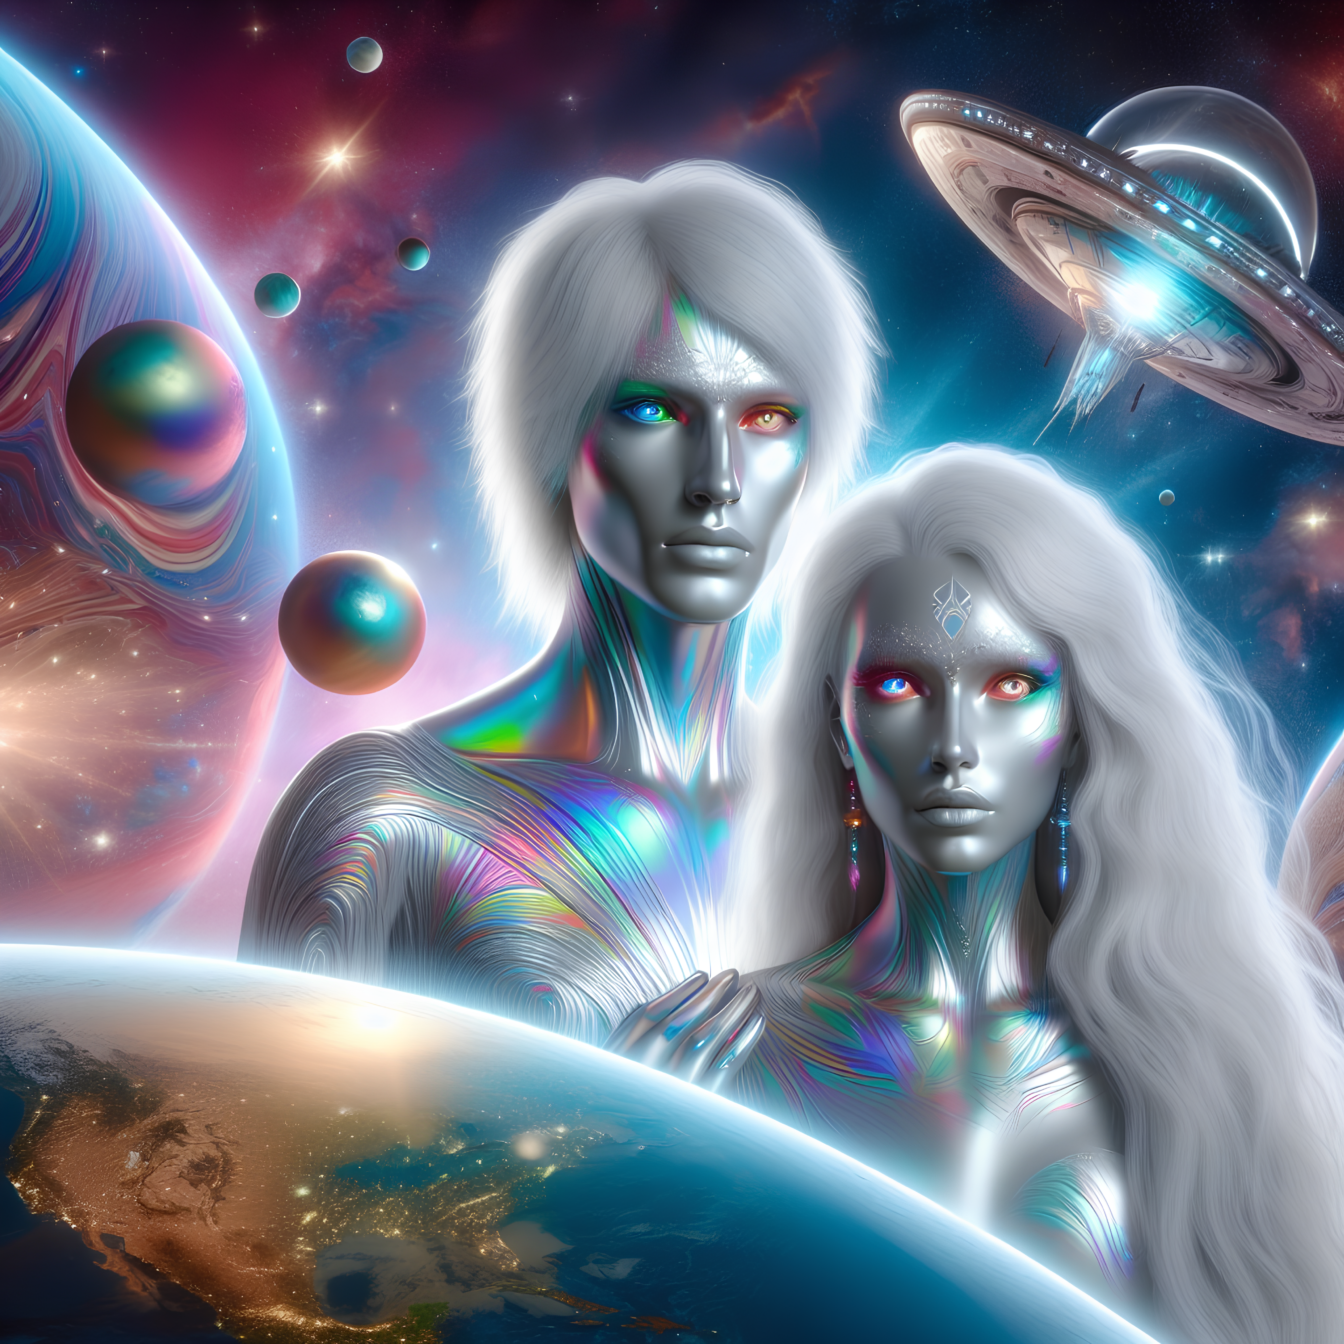 Grafik af mandlig og kvindelig humanoid med evnen til at forudsige fremtiden ved hjælp af astrologi